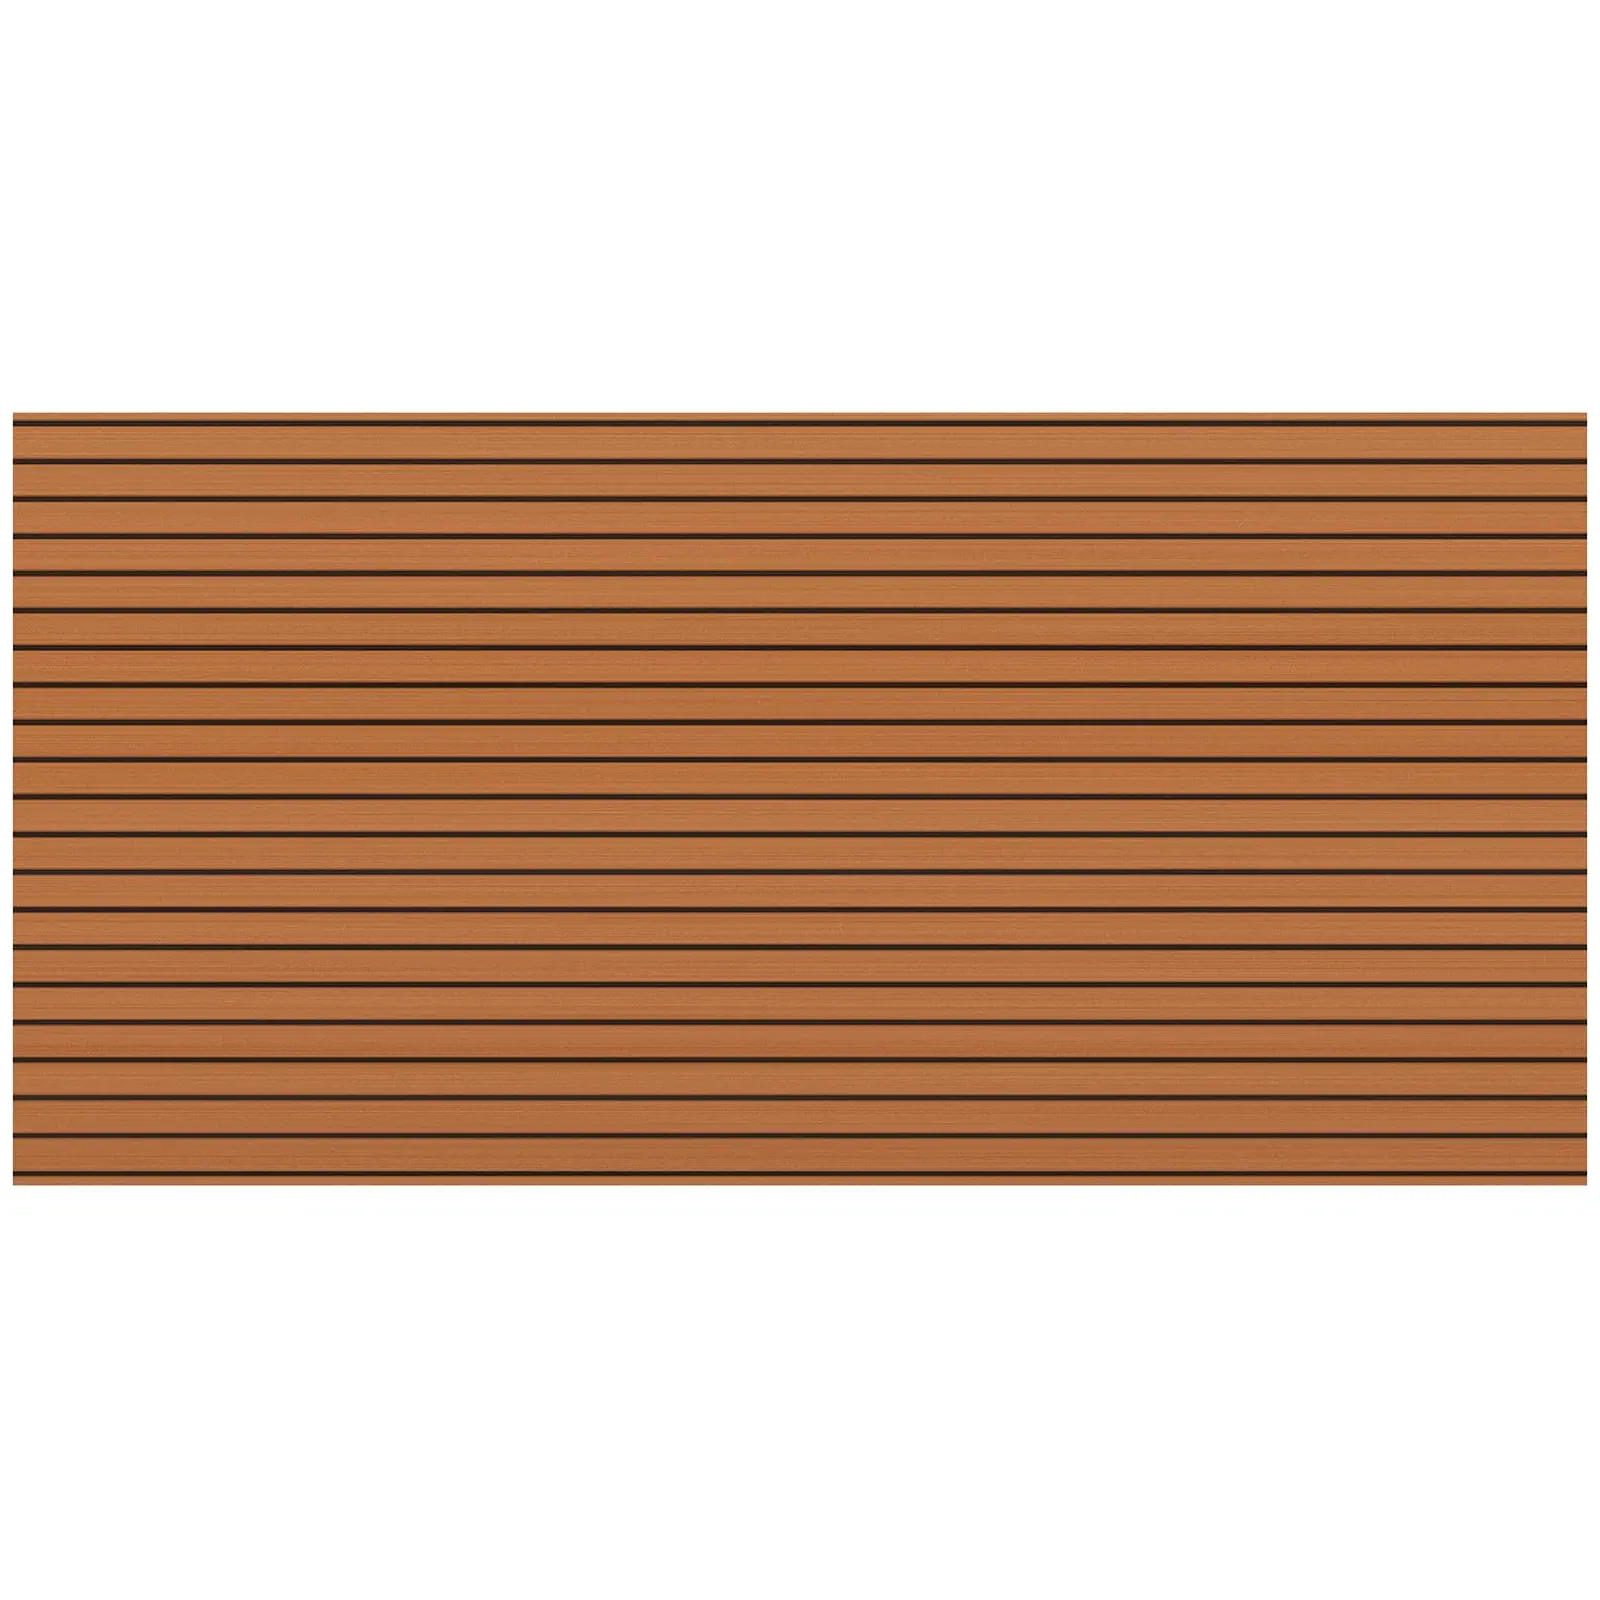 Rivestimento per pavimento barche - 240 x 120 cm - Marrone, nero